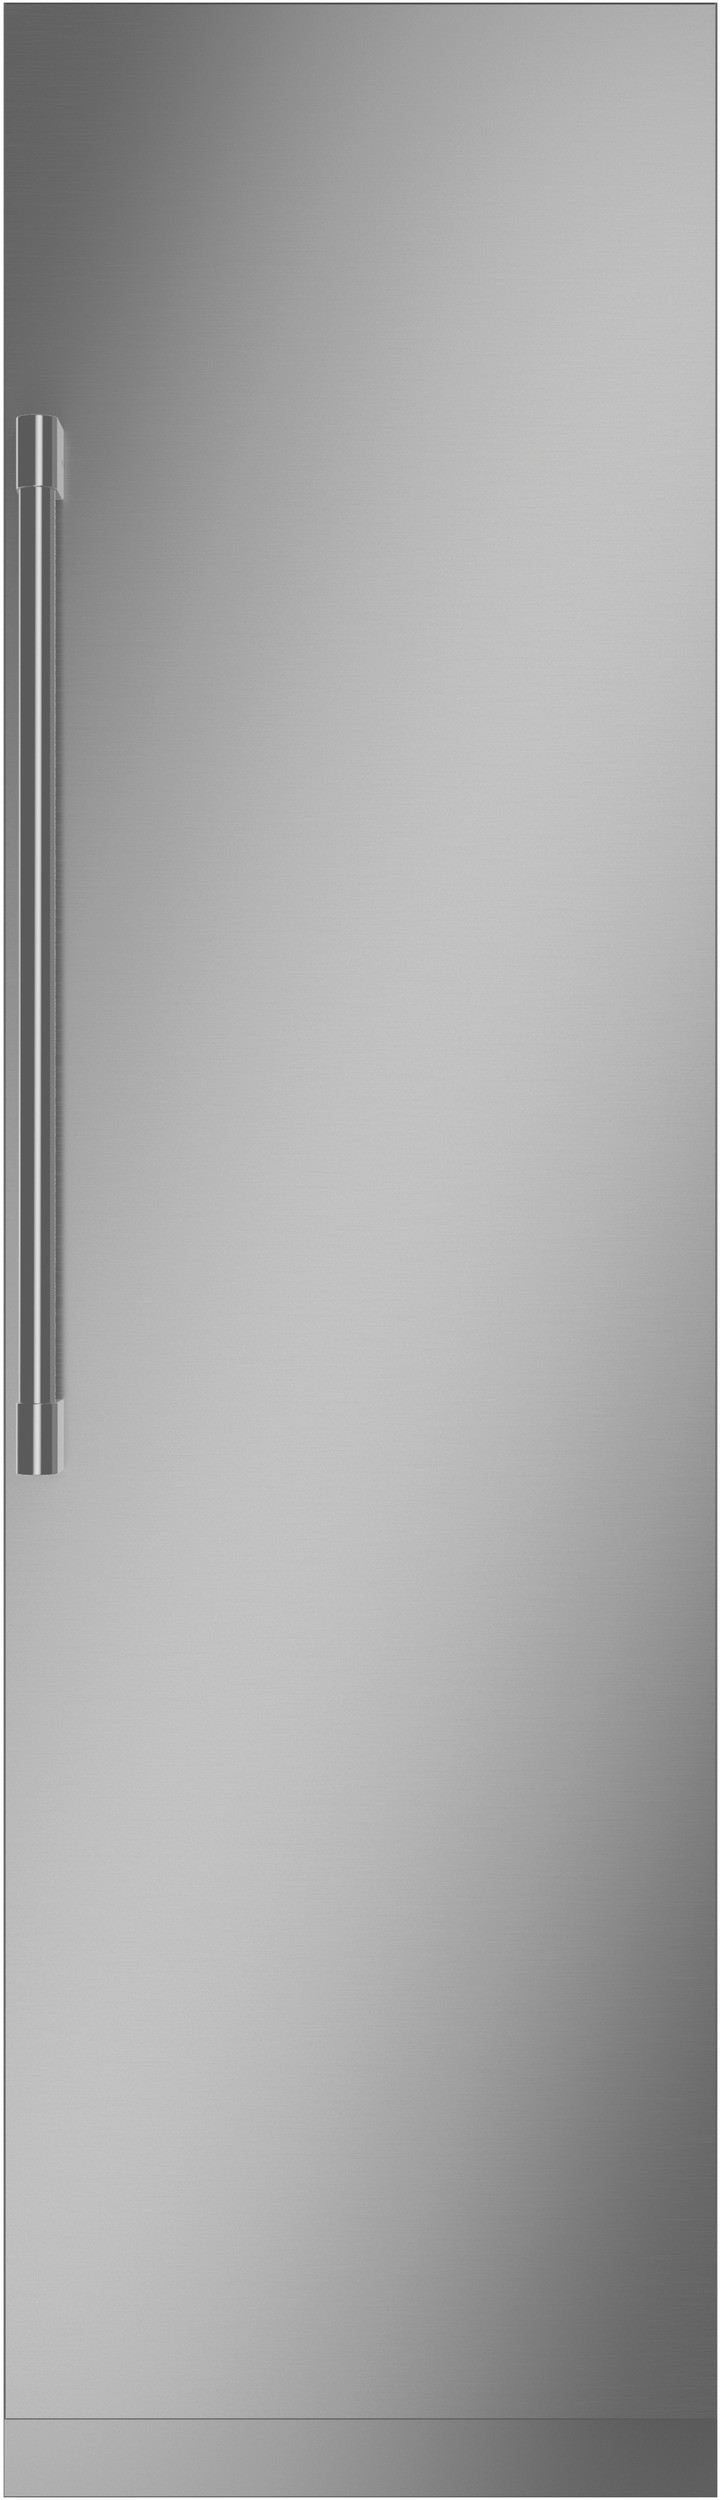 Monogram 24 Inch 24 Built In Counter Depth Column Refrigerator ZIR241NPNII